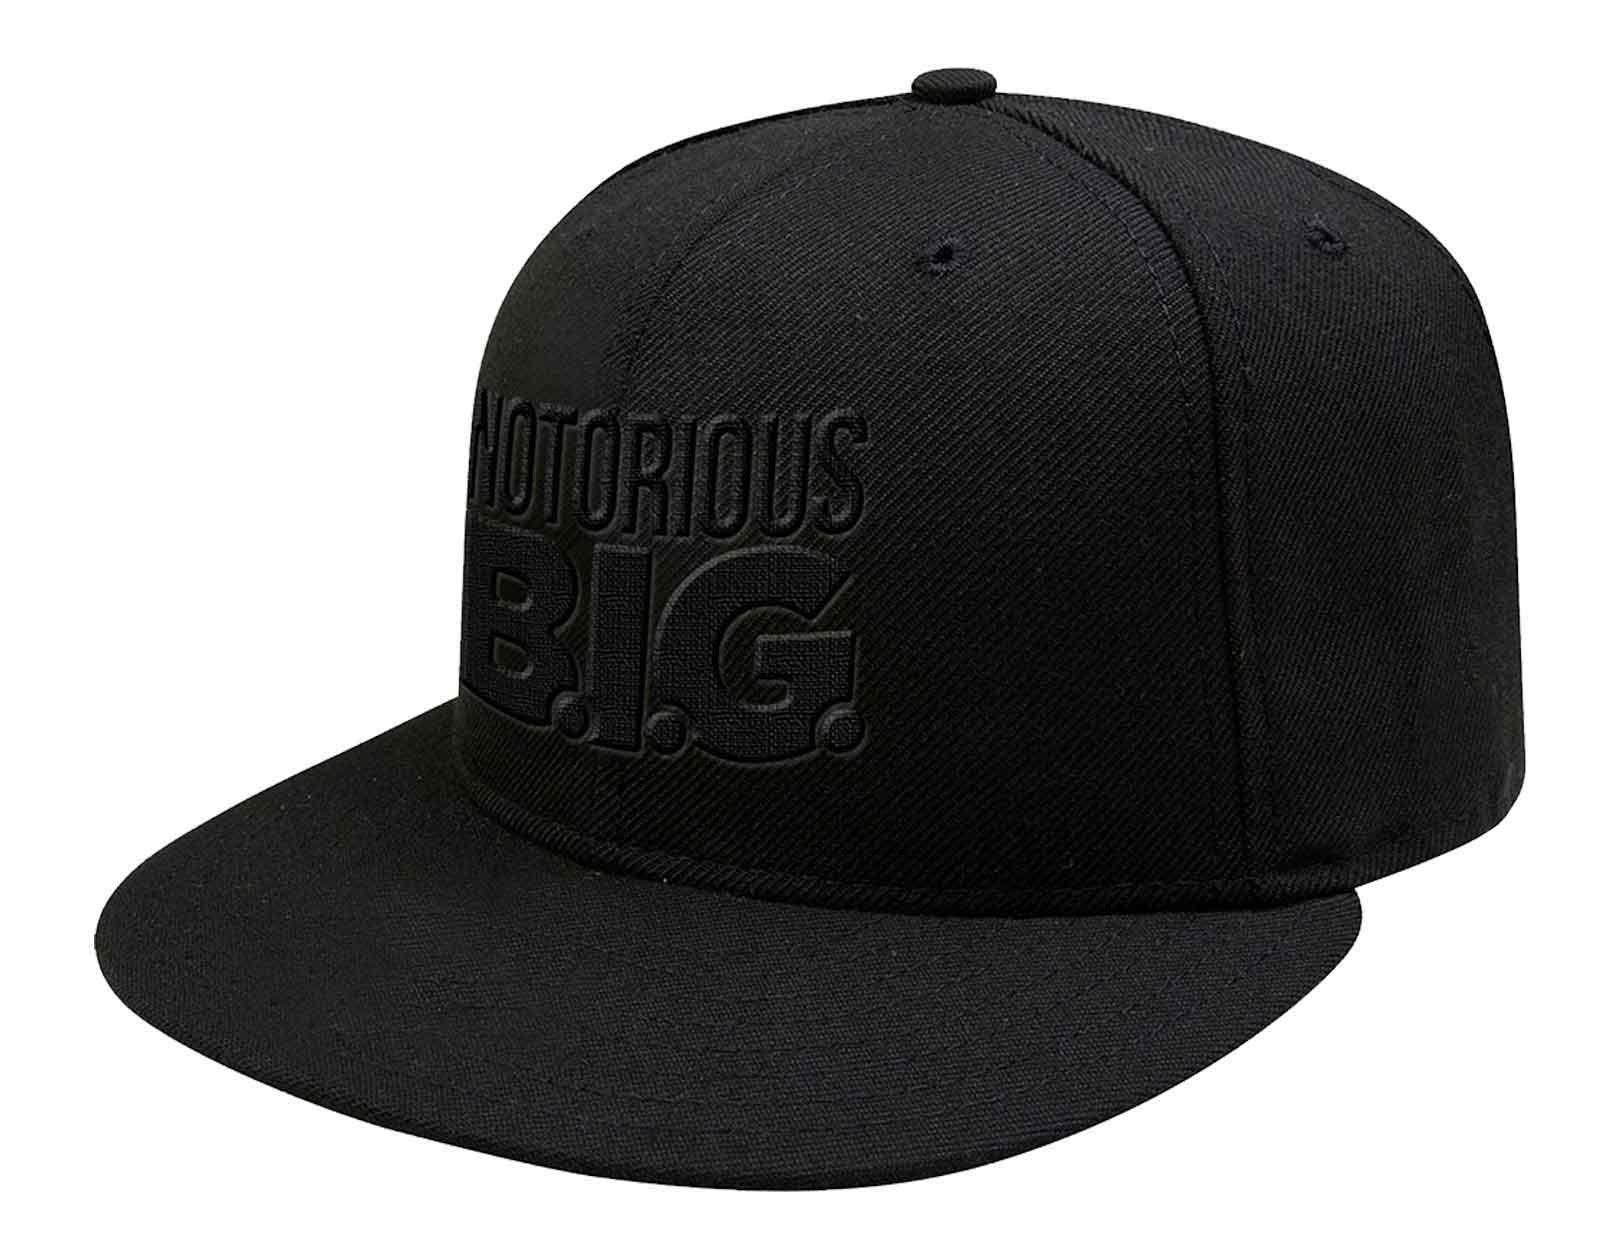 Бейсбольная кепка Snapback с логотипом Черный на черном Biggie Smalls, черный бейсболка snapback с тонким логотипом shady eminem черный